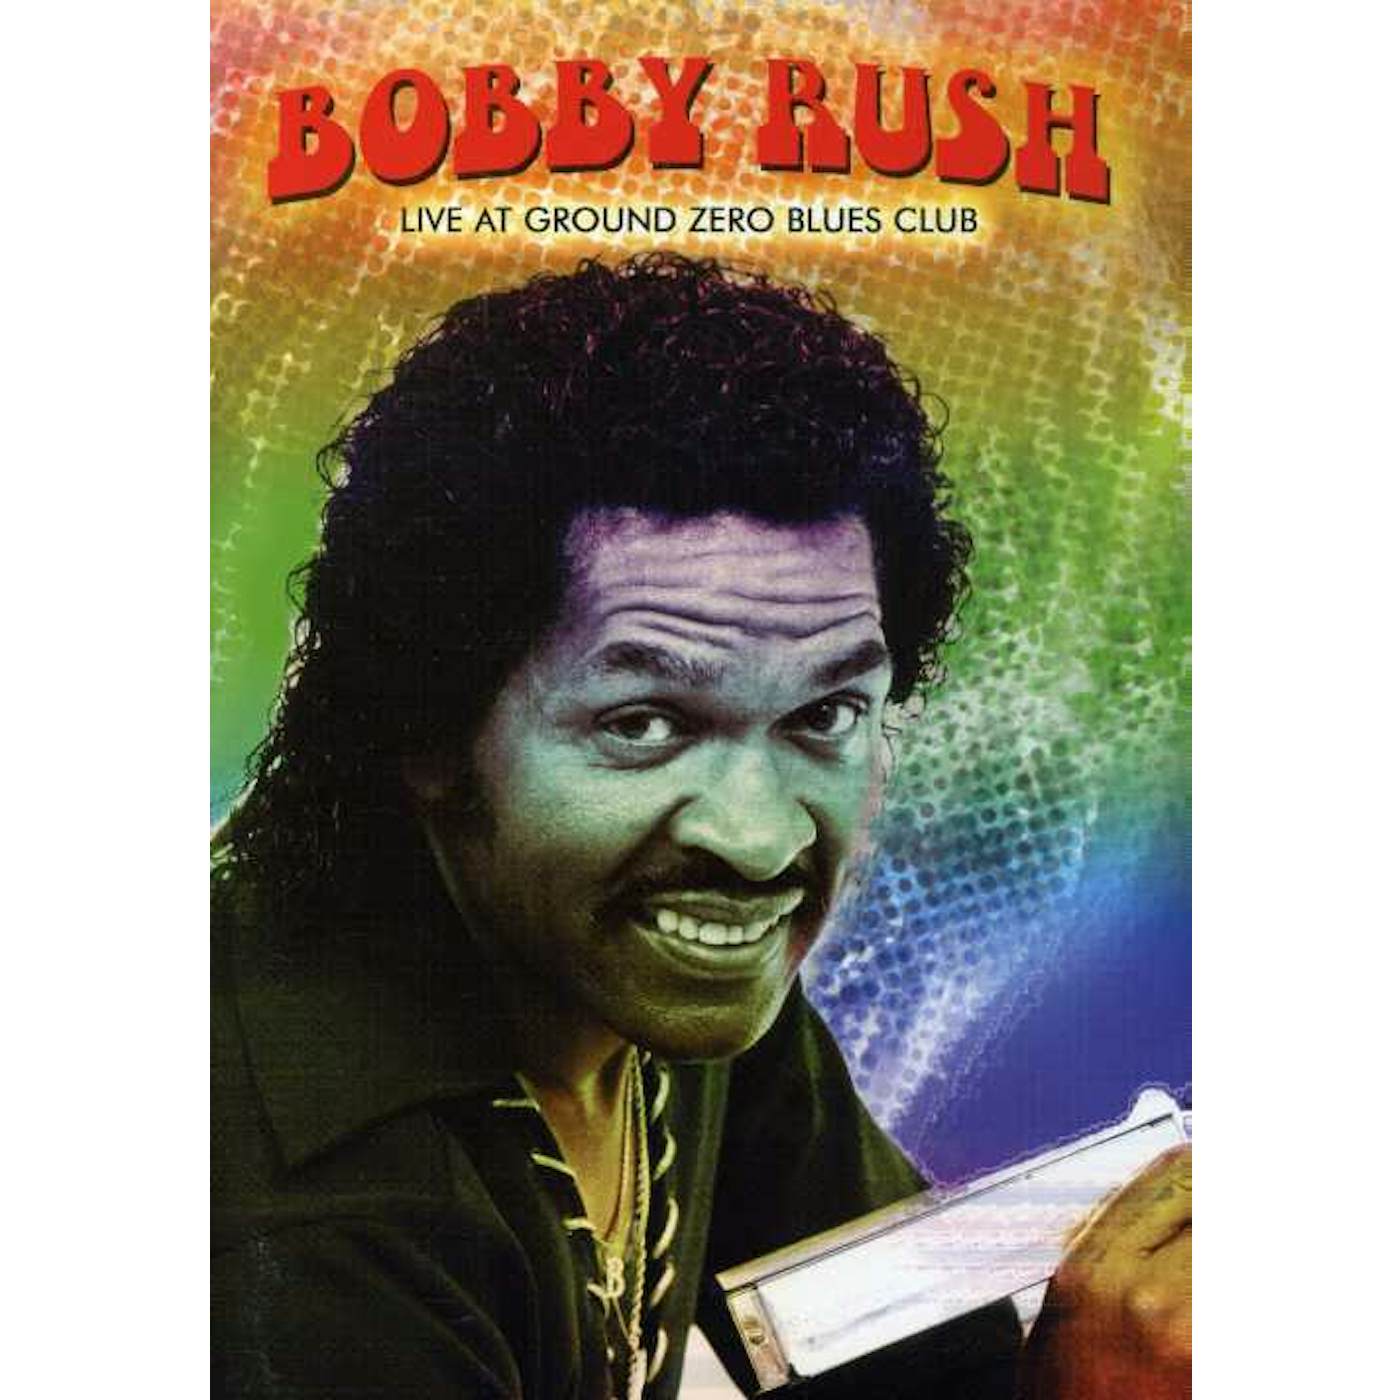 Bobby Rush LIVE AT GROUND ZERO BLUES CLUB DVD